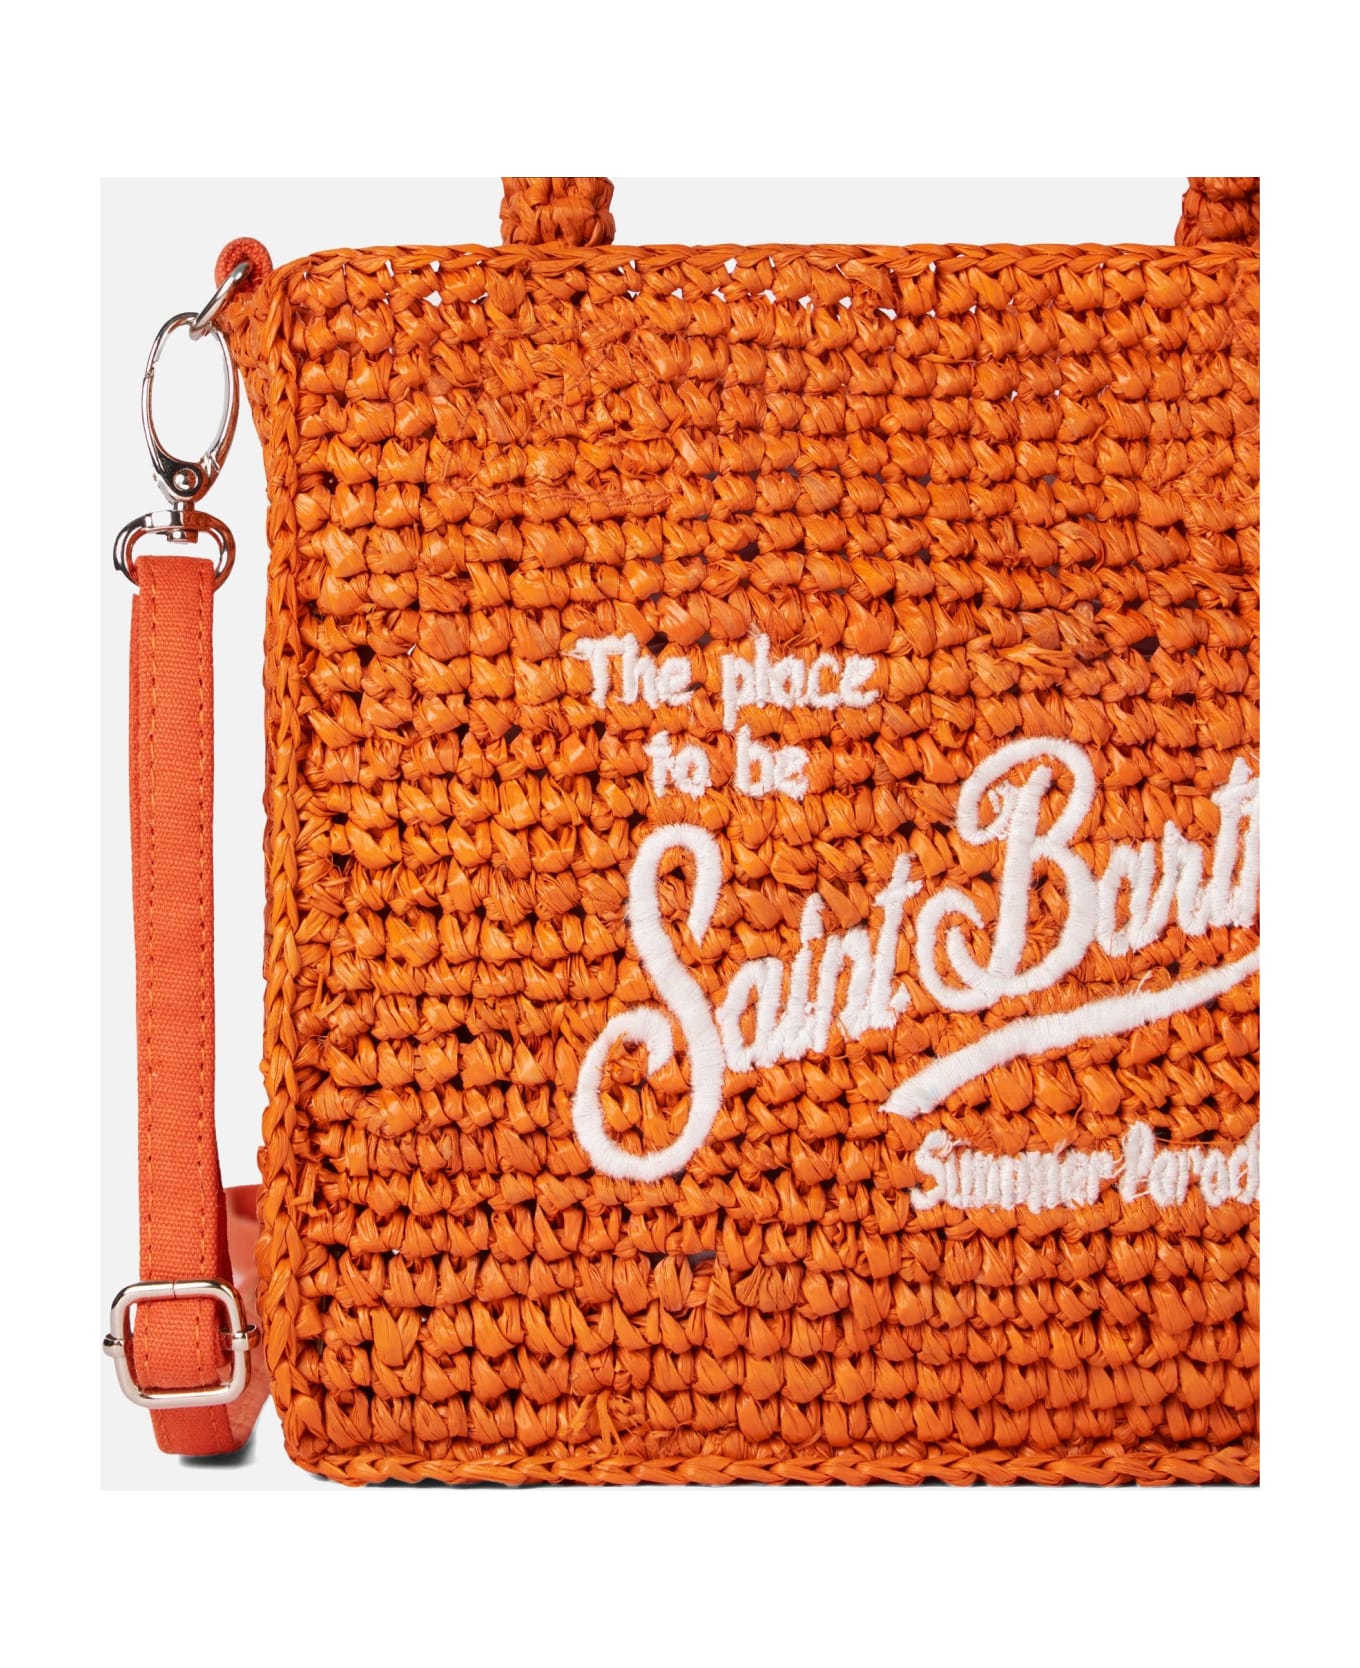 MC2 Saint Barth Mini Vanity Orange Raffia Bag With Front Embroidery - ORANGE